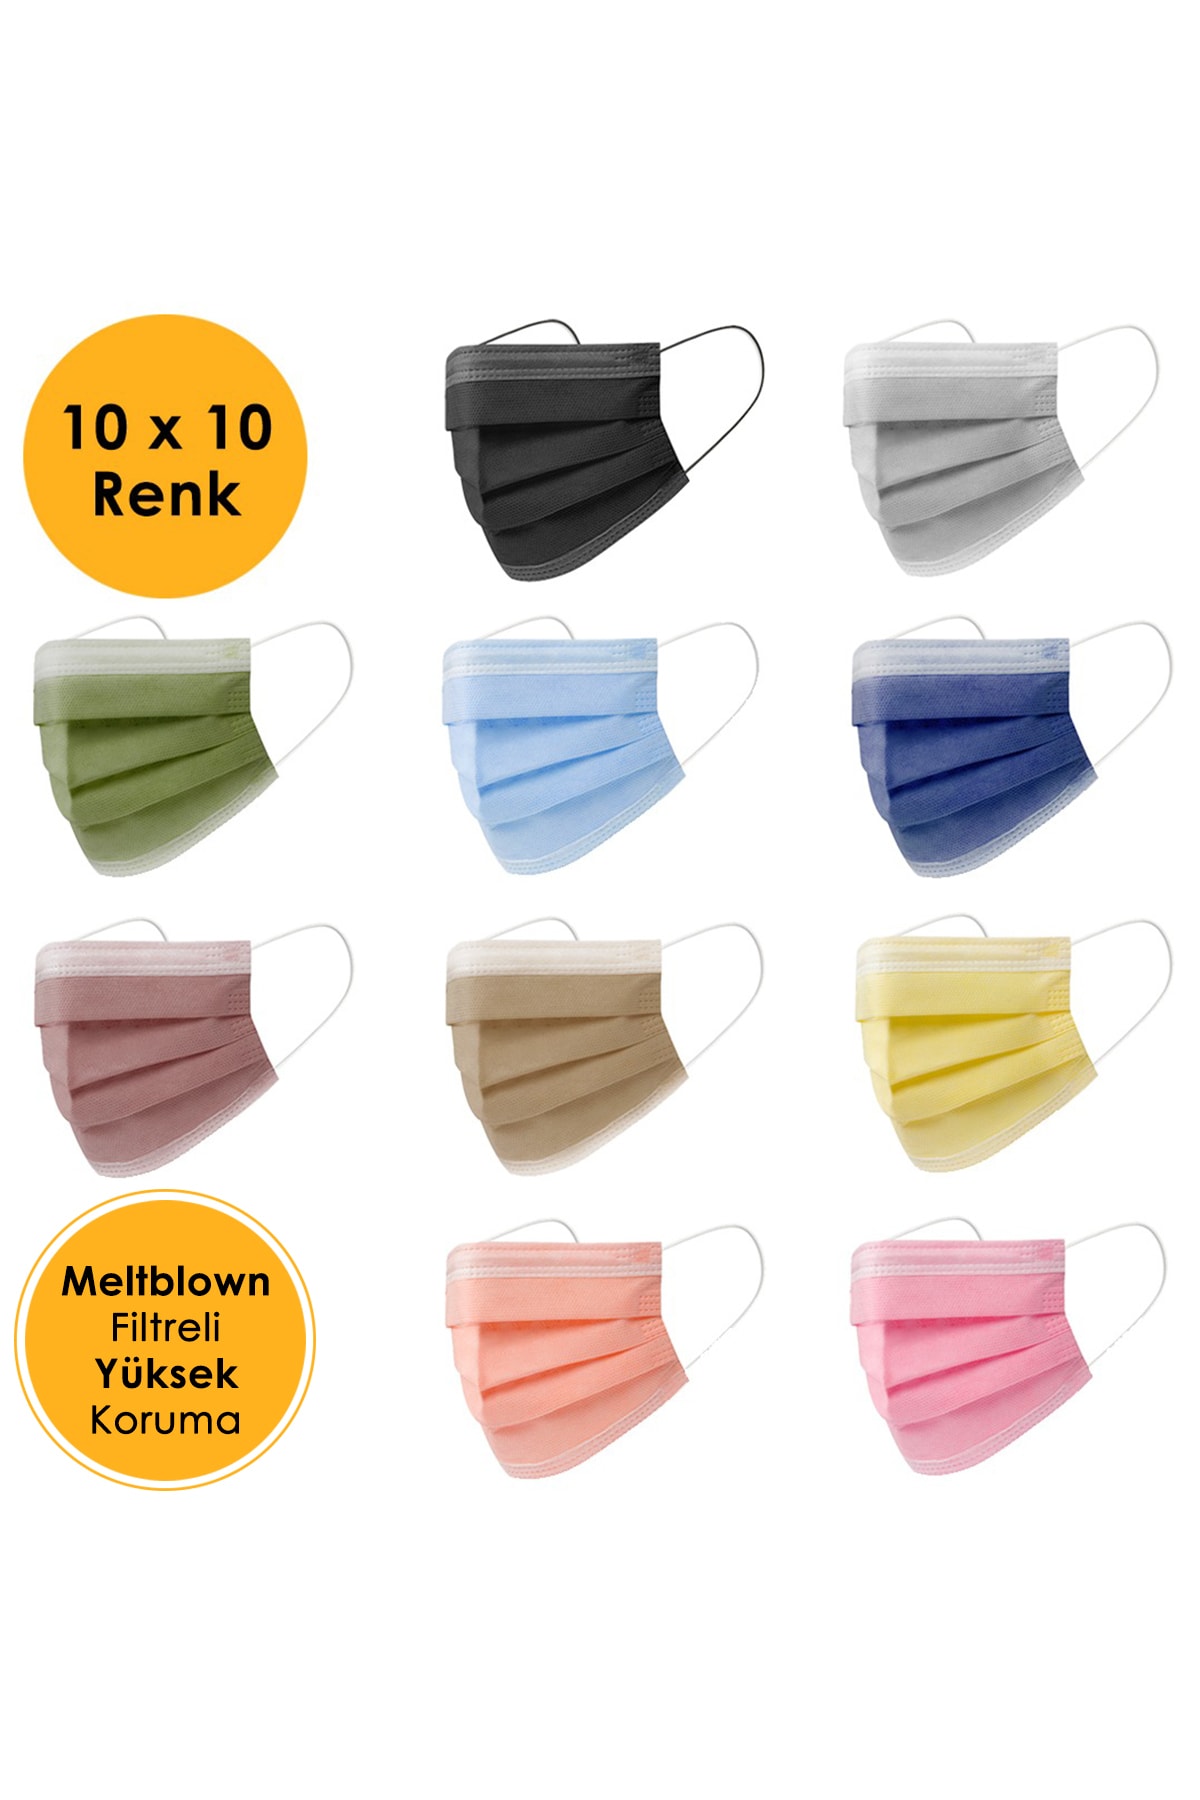 100'lü Meltblown Filtreli 3 Katlı Telli Konfor Modeli Renkli Cerrahi Maske Çeşitleri (10X10 RENK)